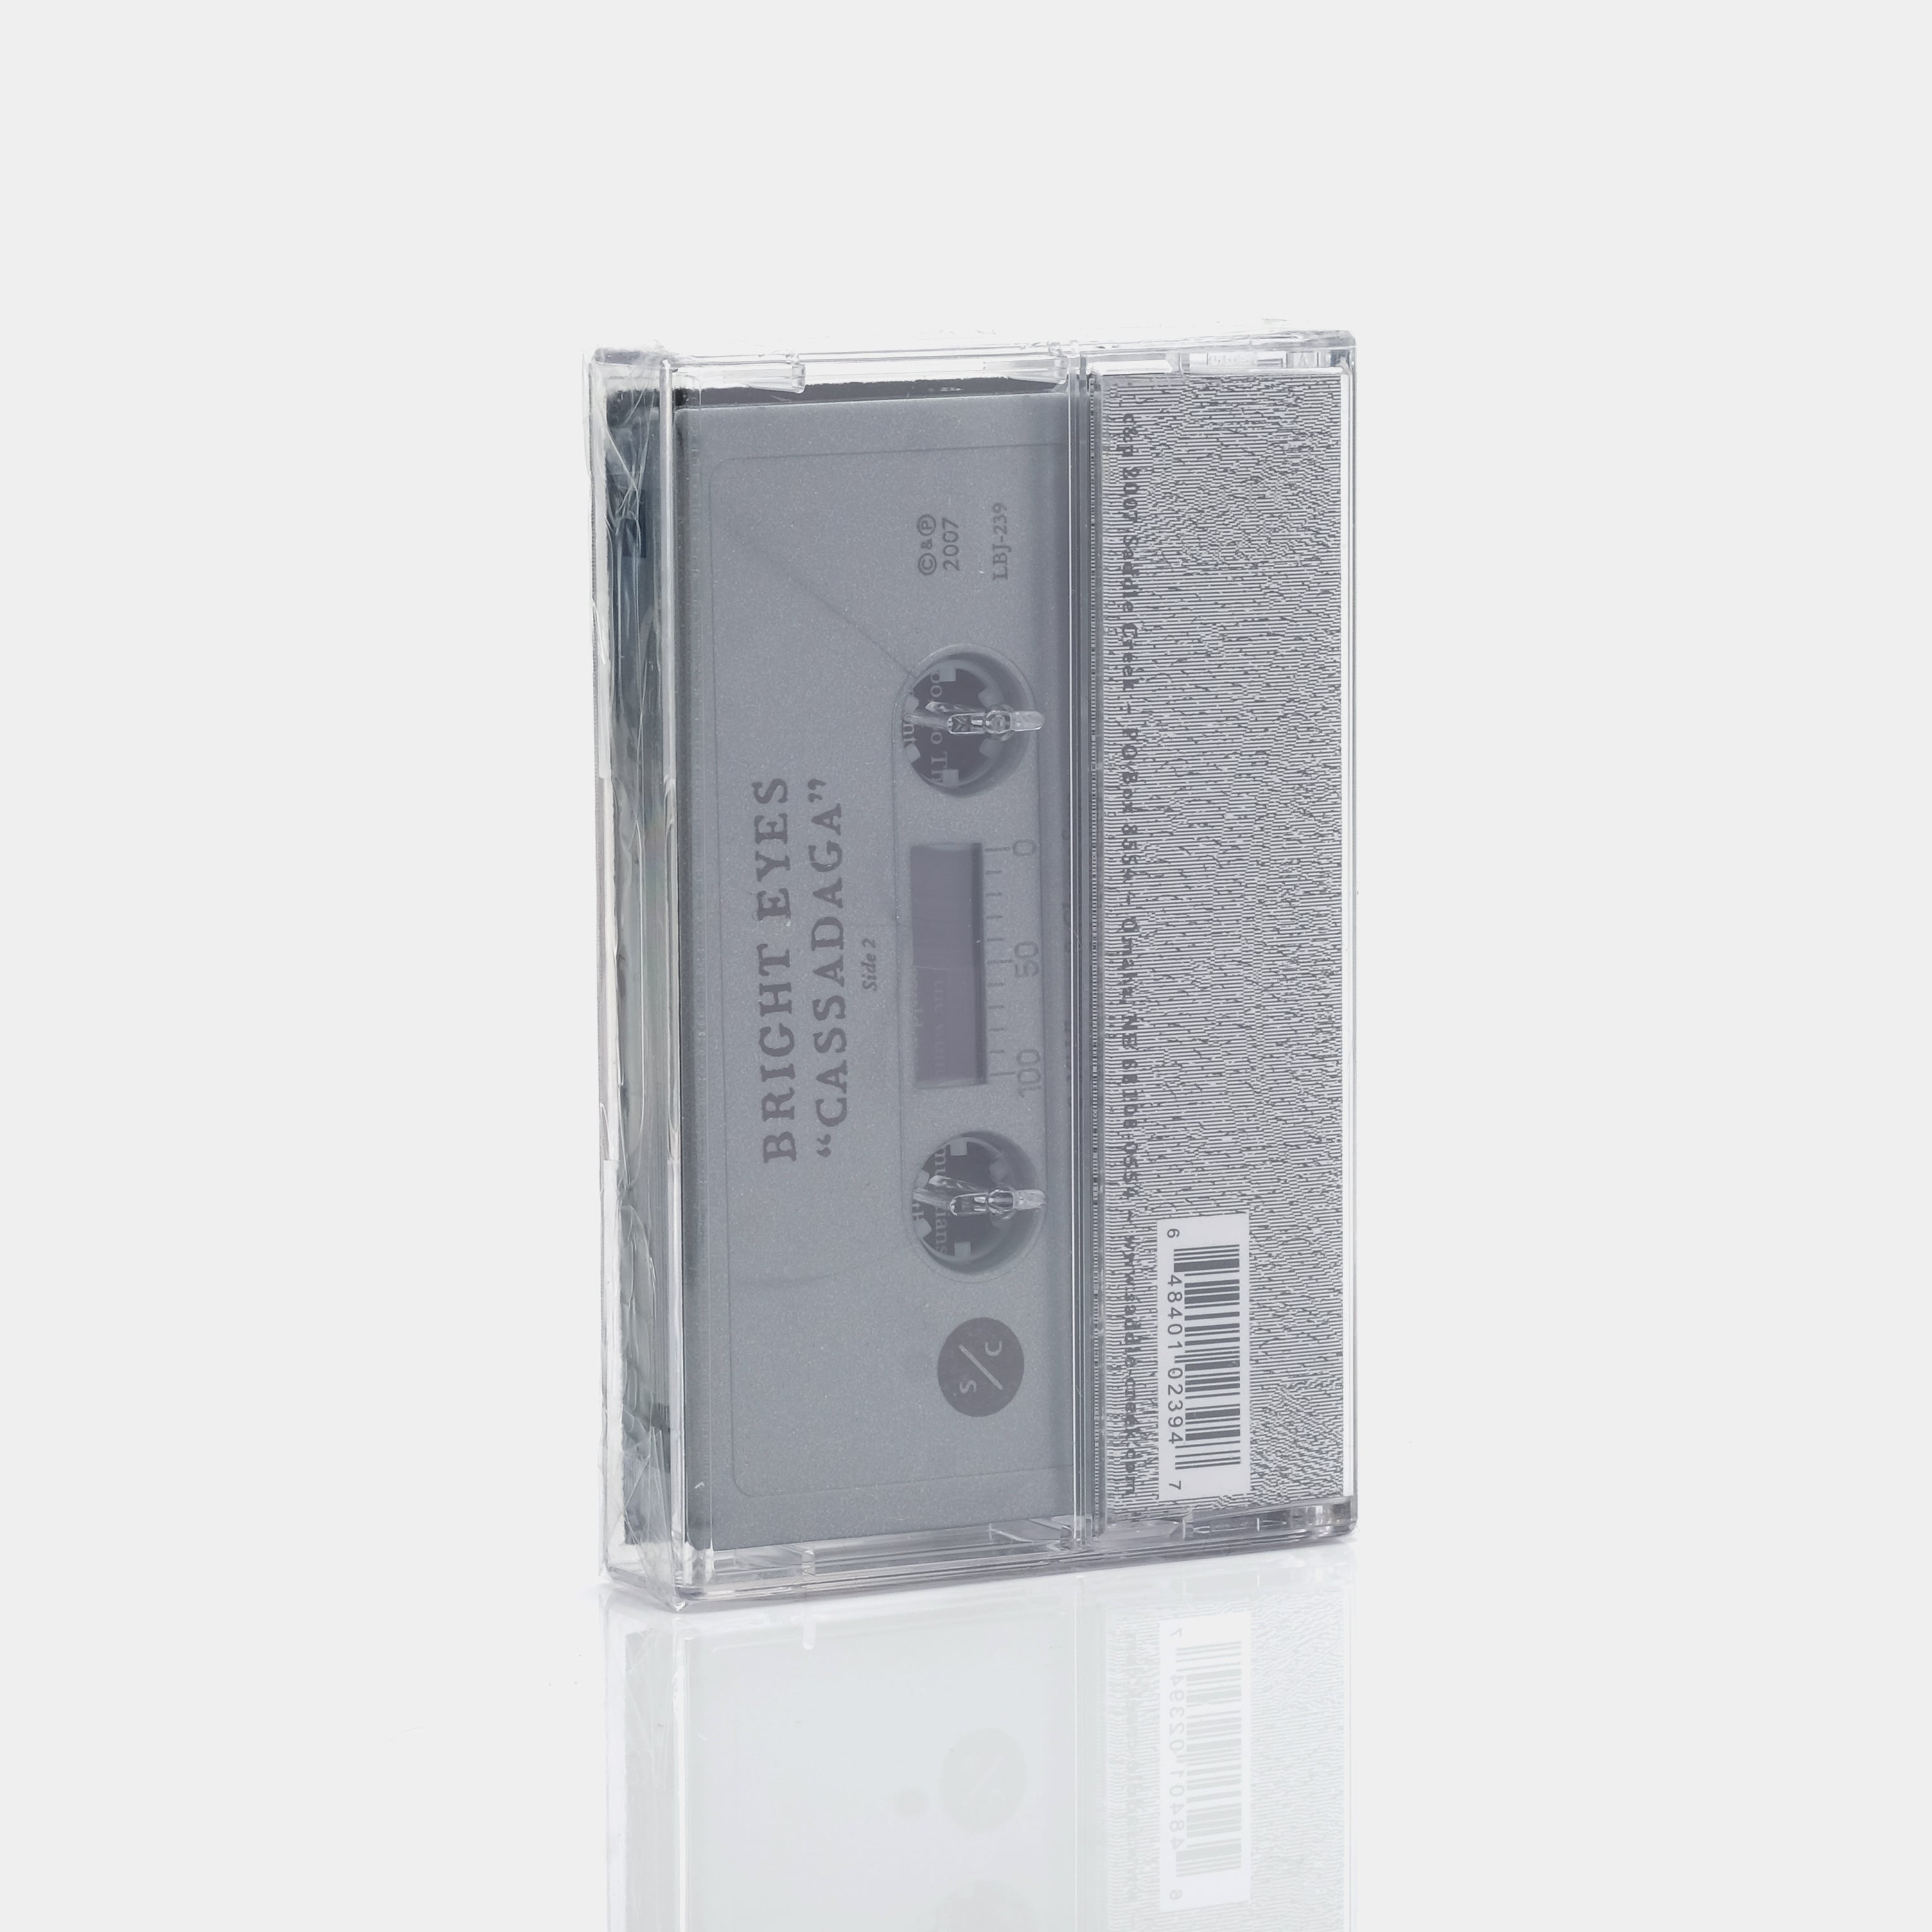 Bright Eyes - Cassadaga Cassette Tape